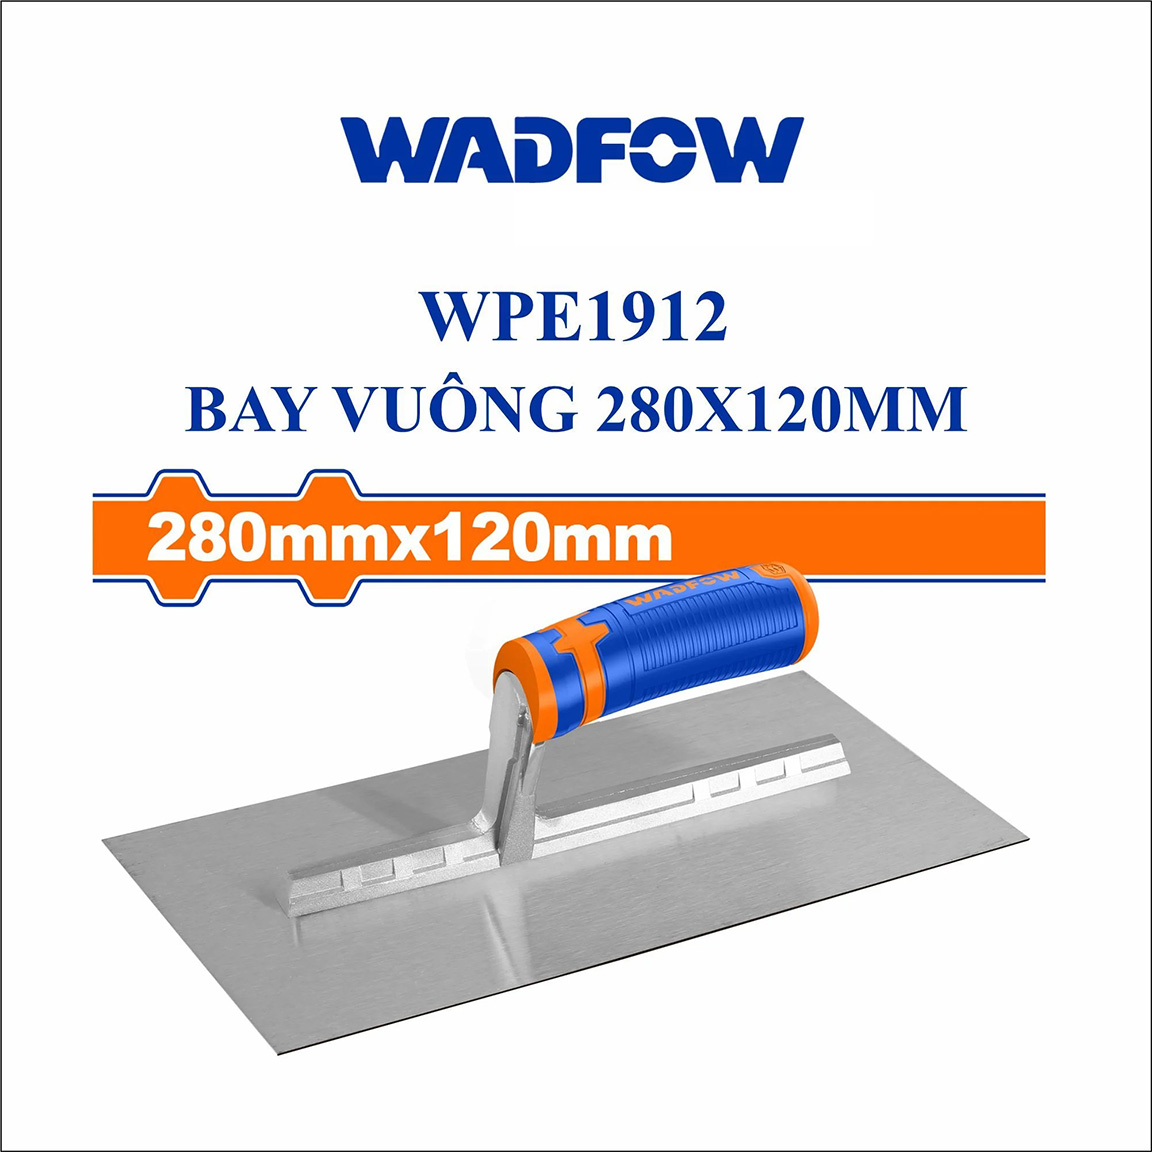 Hình ảnh 2 của mặt hàng Bay vuông 280x120mm Wadfow WPE1912